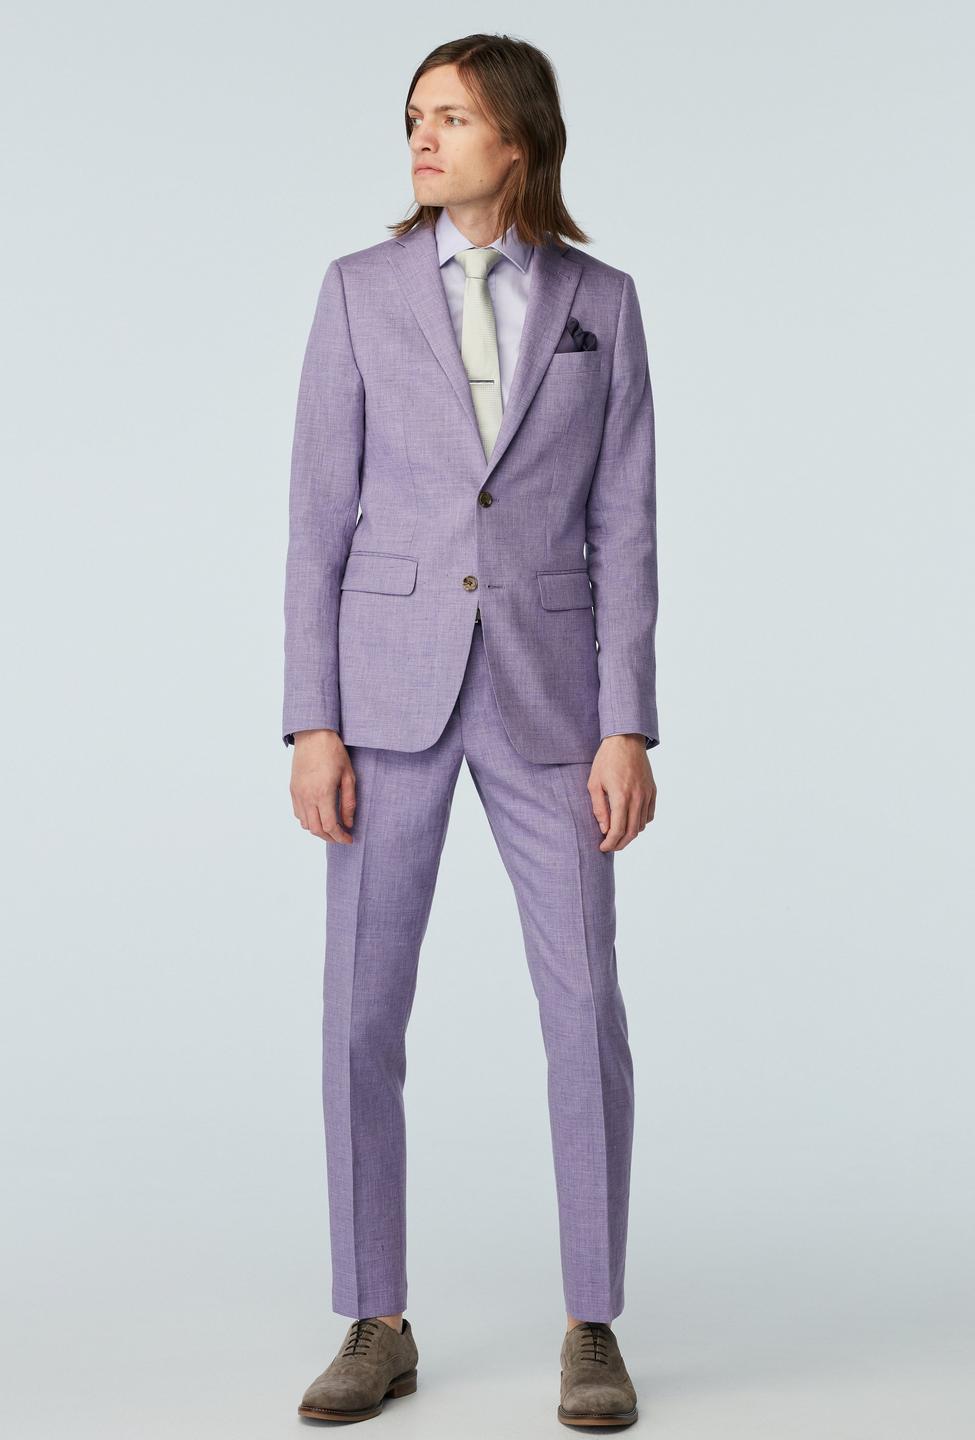 Purple Colour Lover Punjabi Suit Design Ideas 2023 | Stylish dark Purple  Punjabi suit design - YouTube